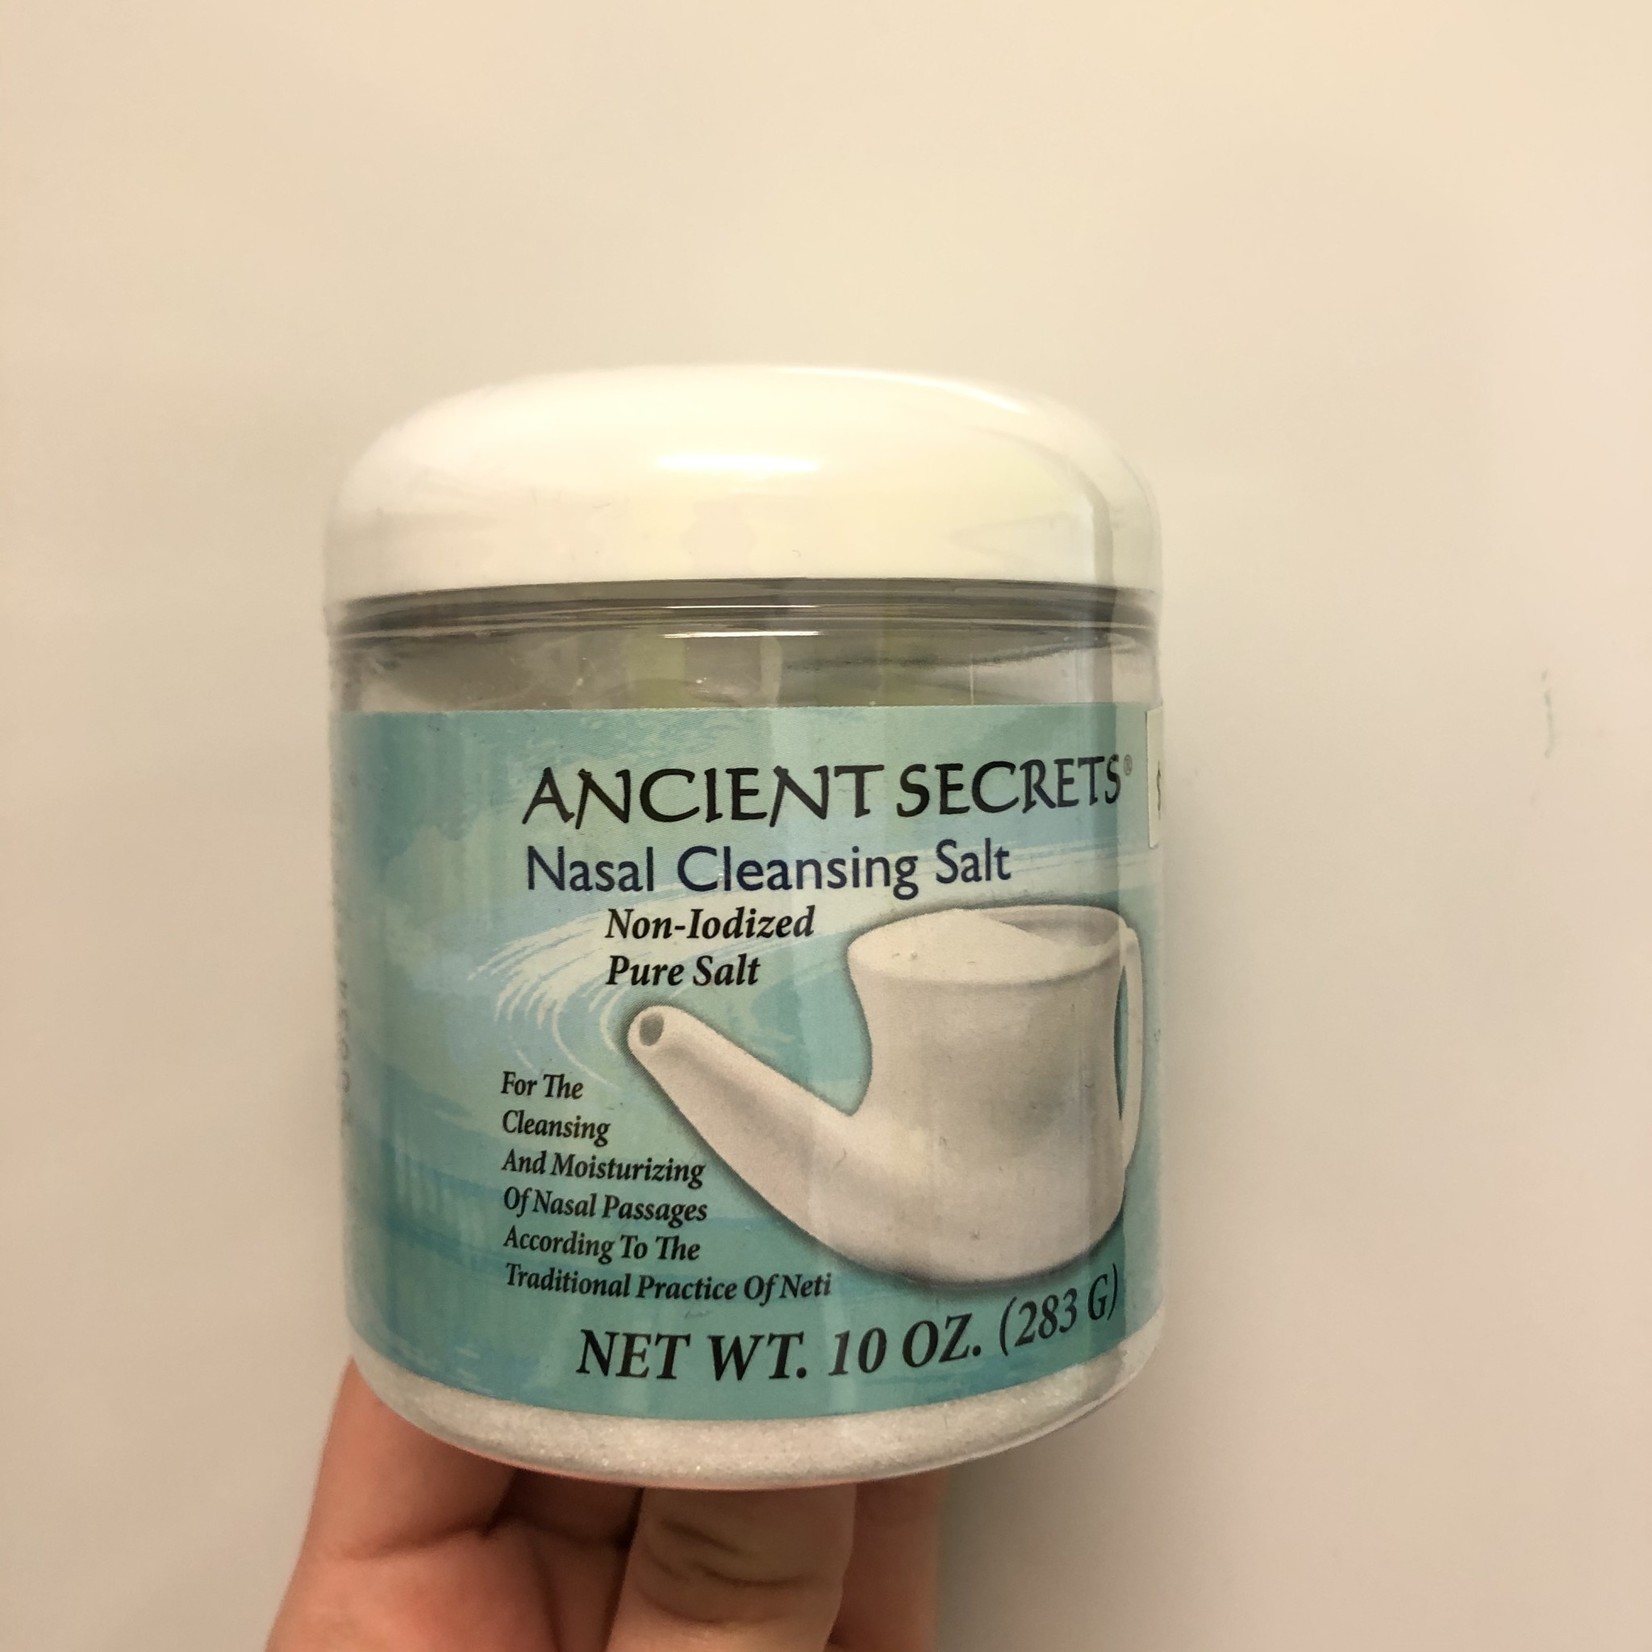 Ancient Secrets Ancient Secrets Cleansing Salt 10 oz/283g